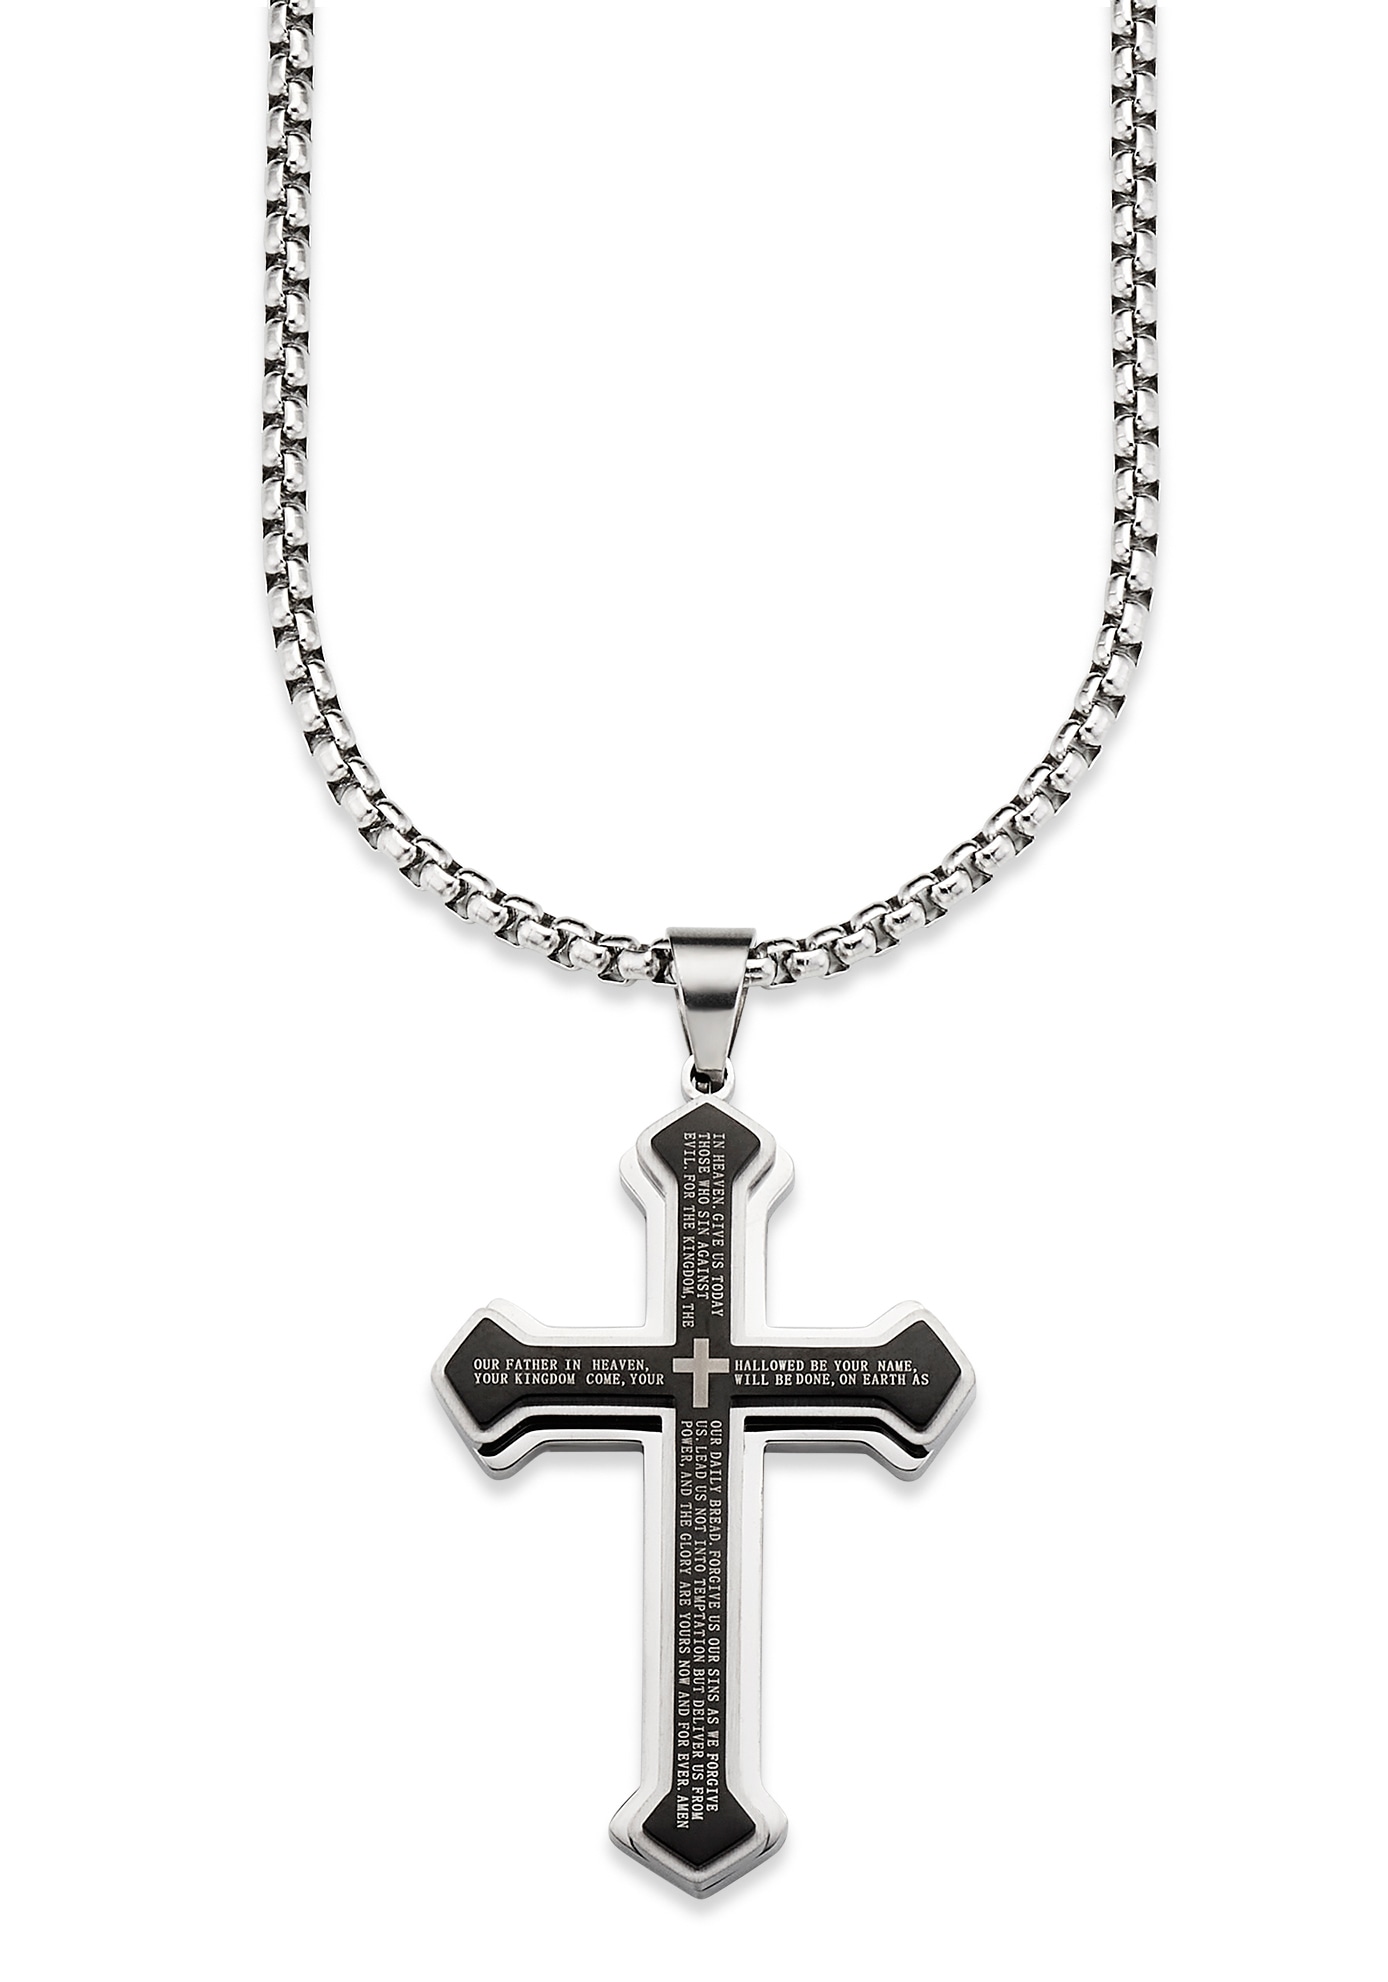 Kette mit Anhänger »Schmuck Geschenk, Halskette Kreuz Venezianerkette Silber Schwarz«